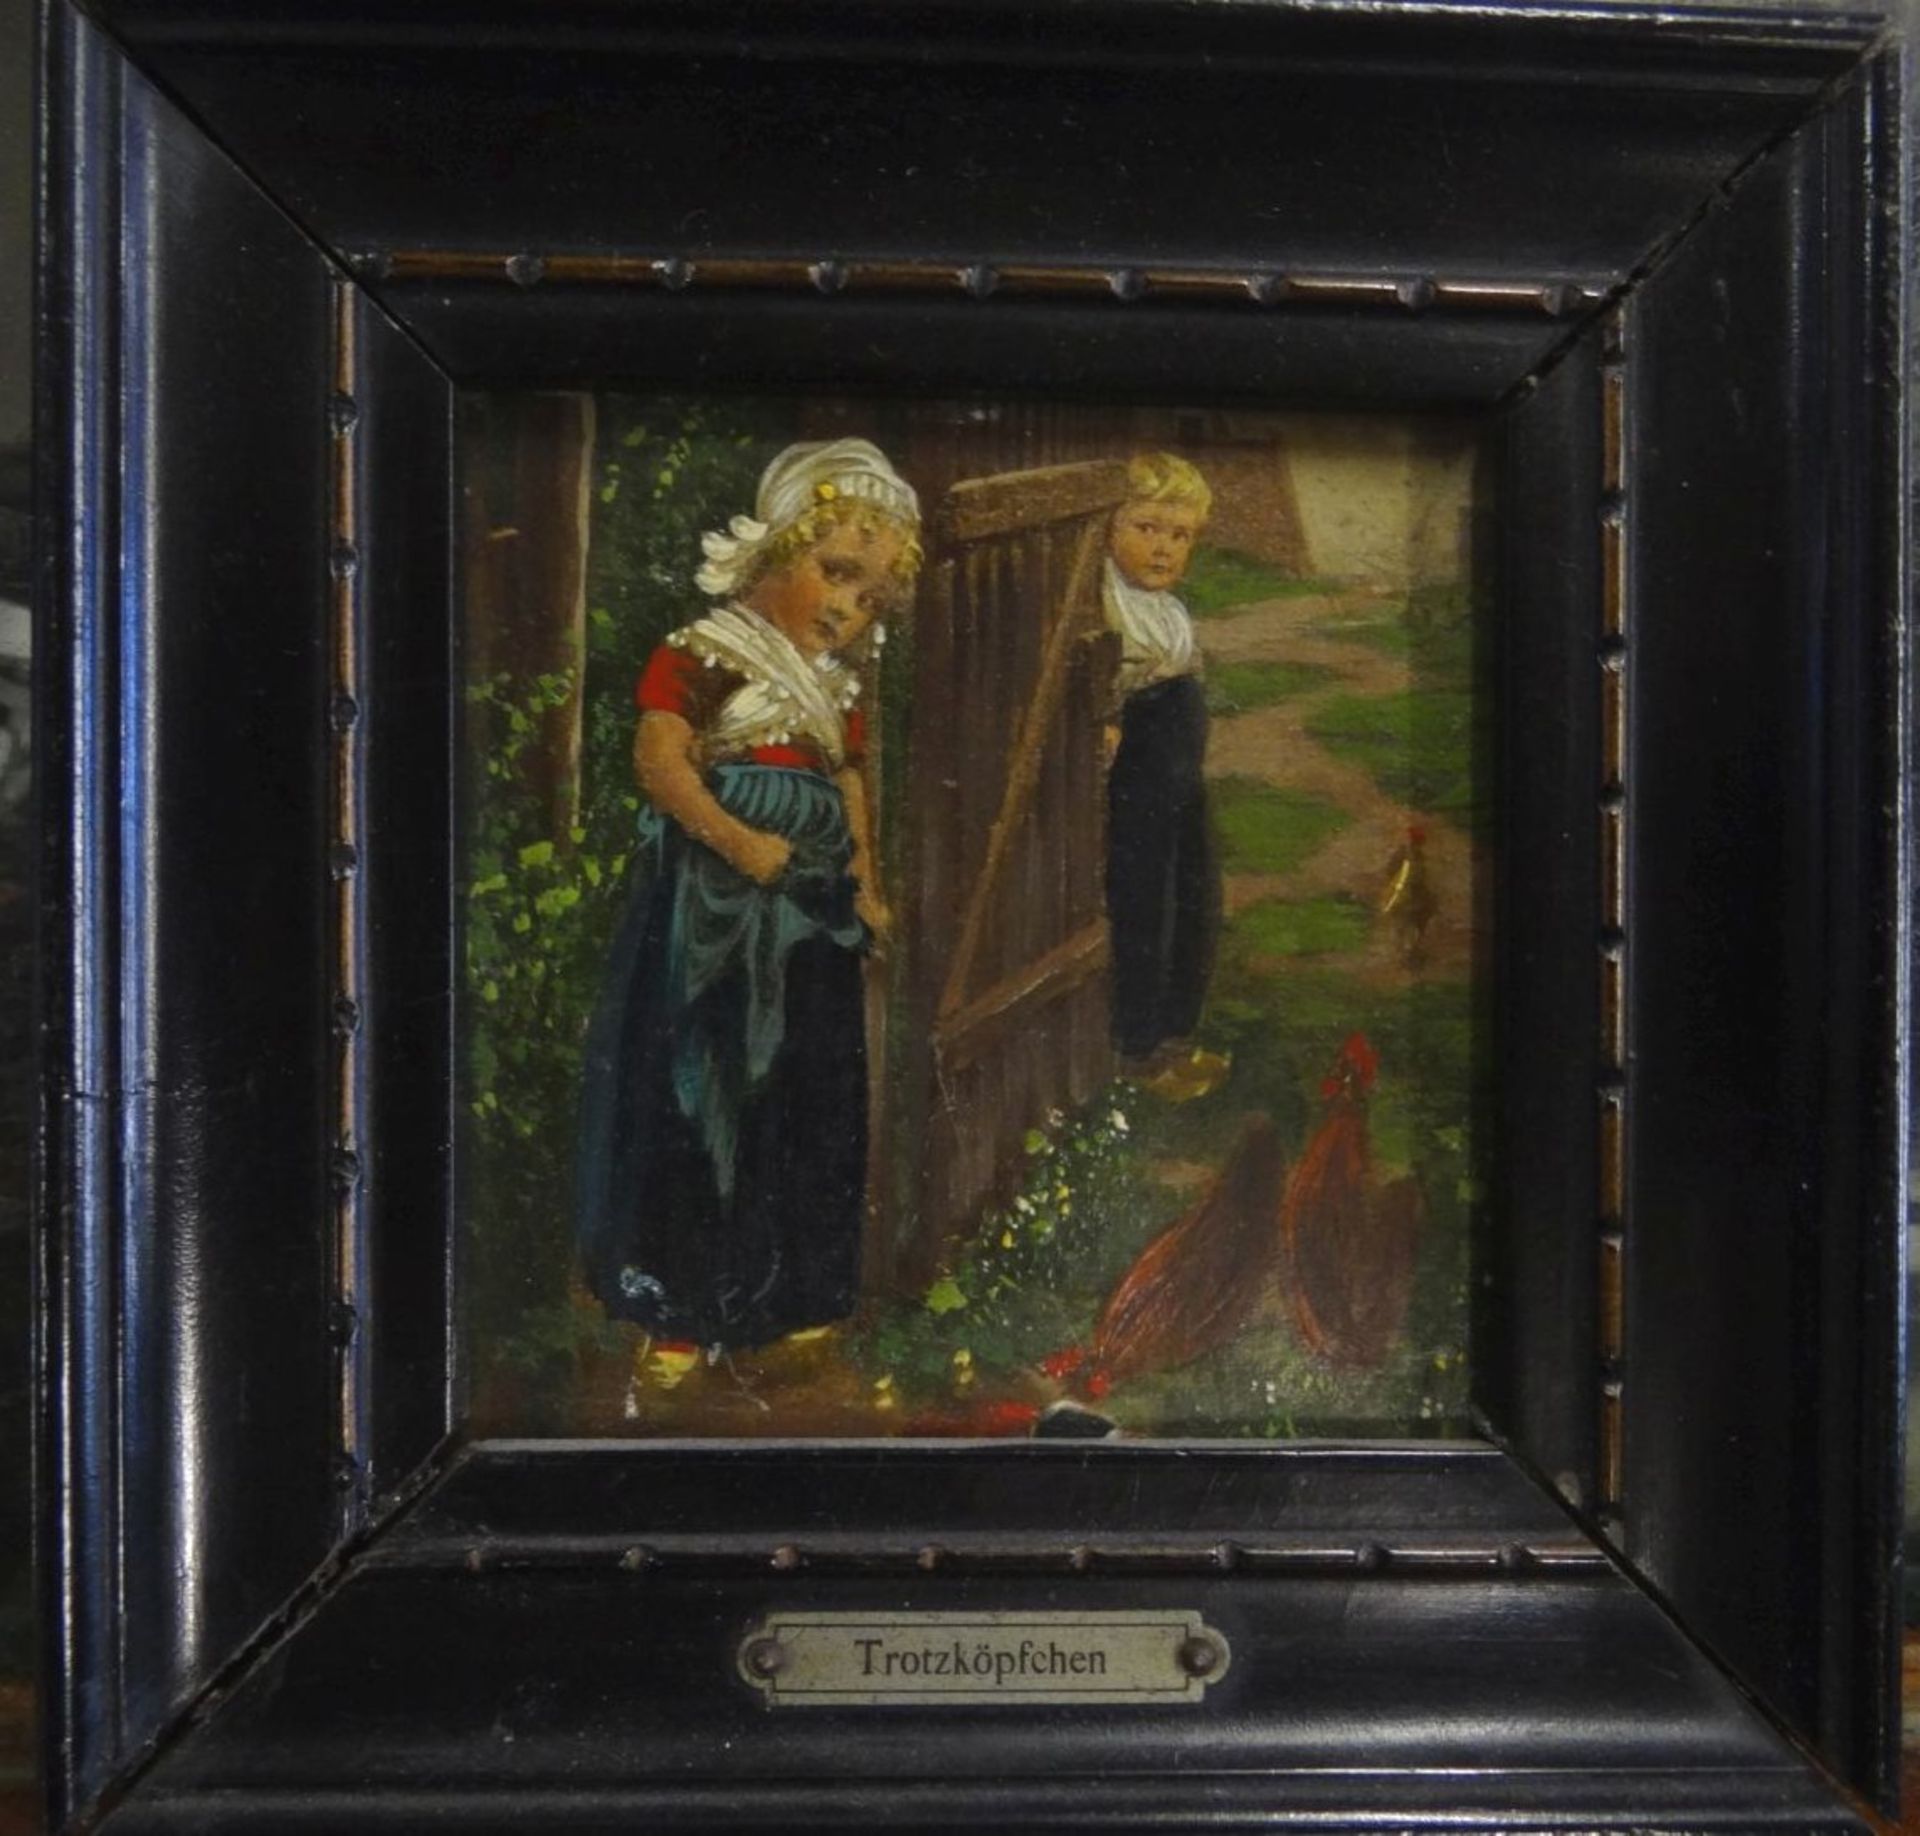 kl. anonymes Gemälde "Trotzköpfchen", gerahmt, 13x13- - -22.61 % buyer's premium on the hammer - Bild 2 aus 3